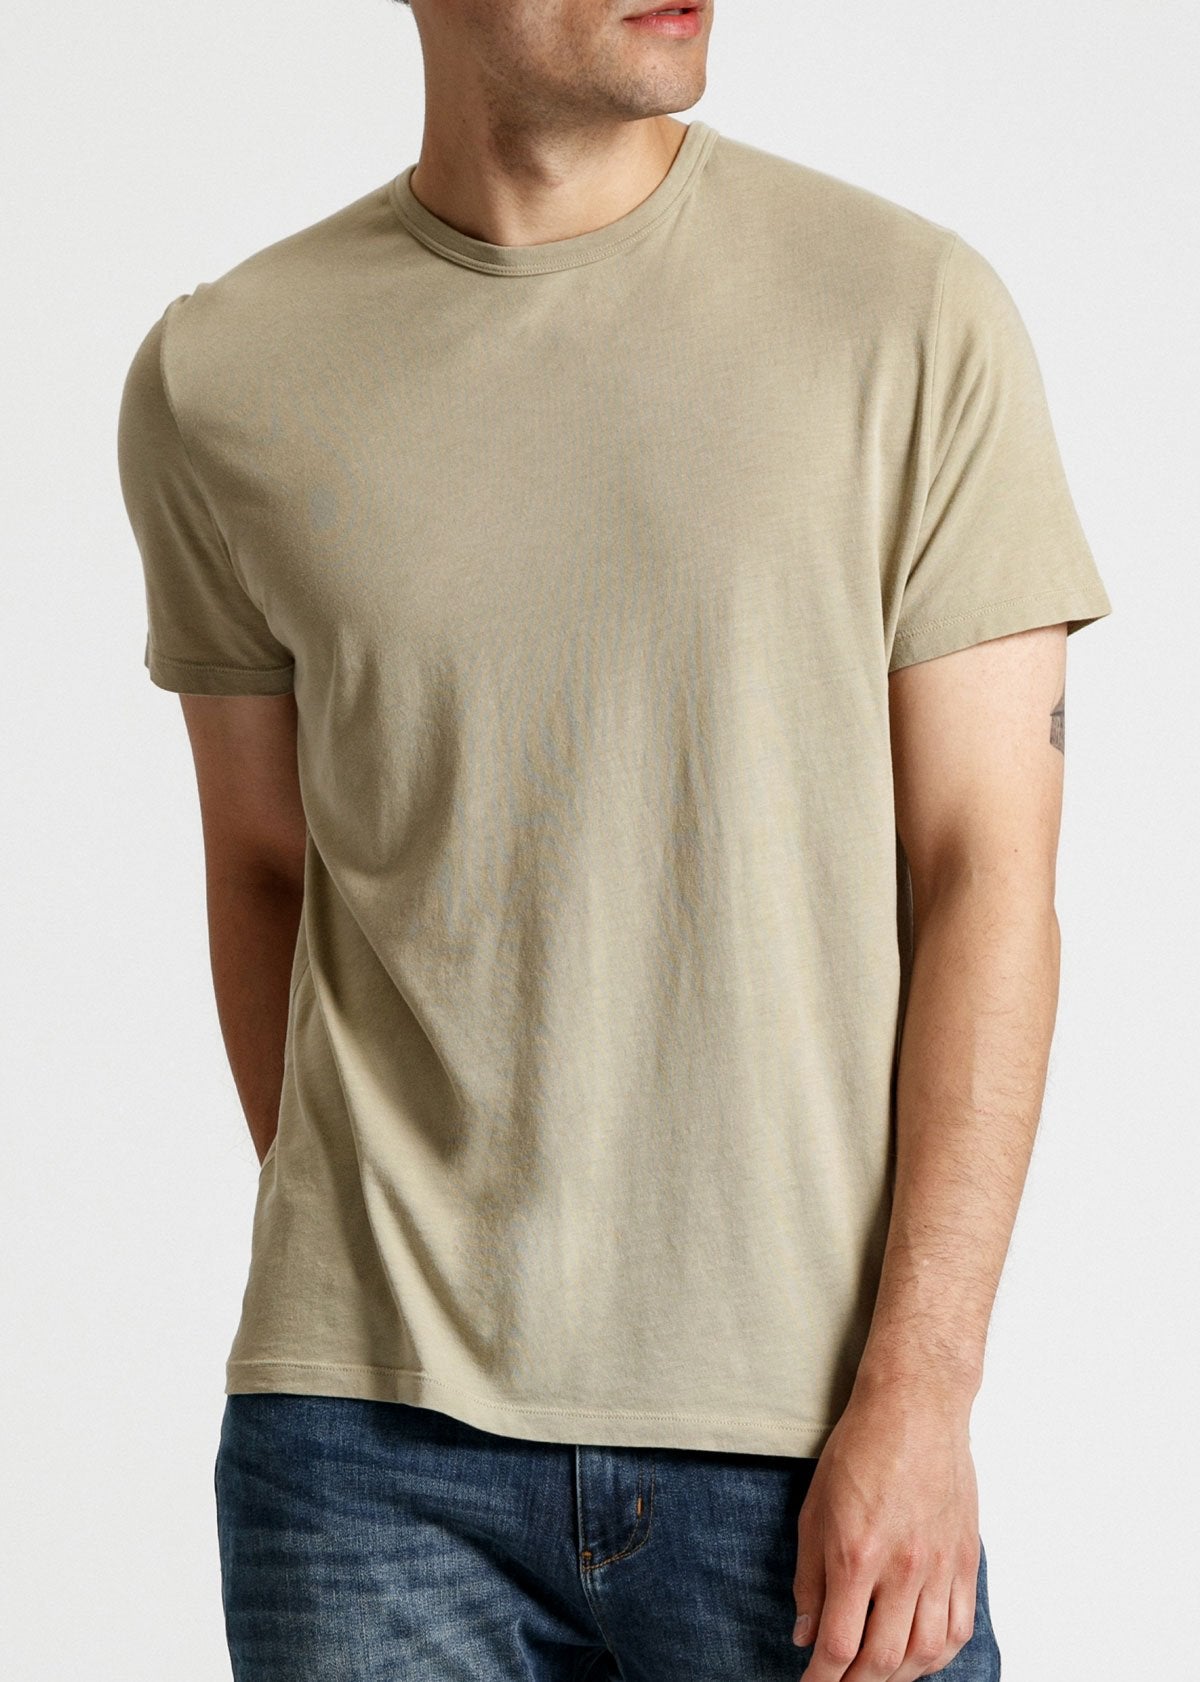 Mens soft lightweight light green performance t-shirt front